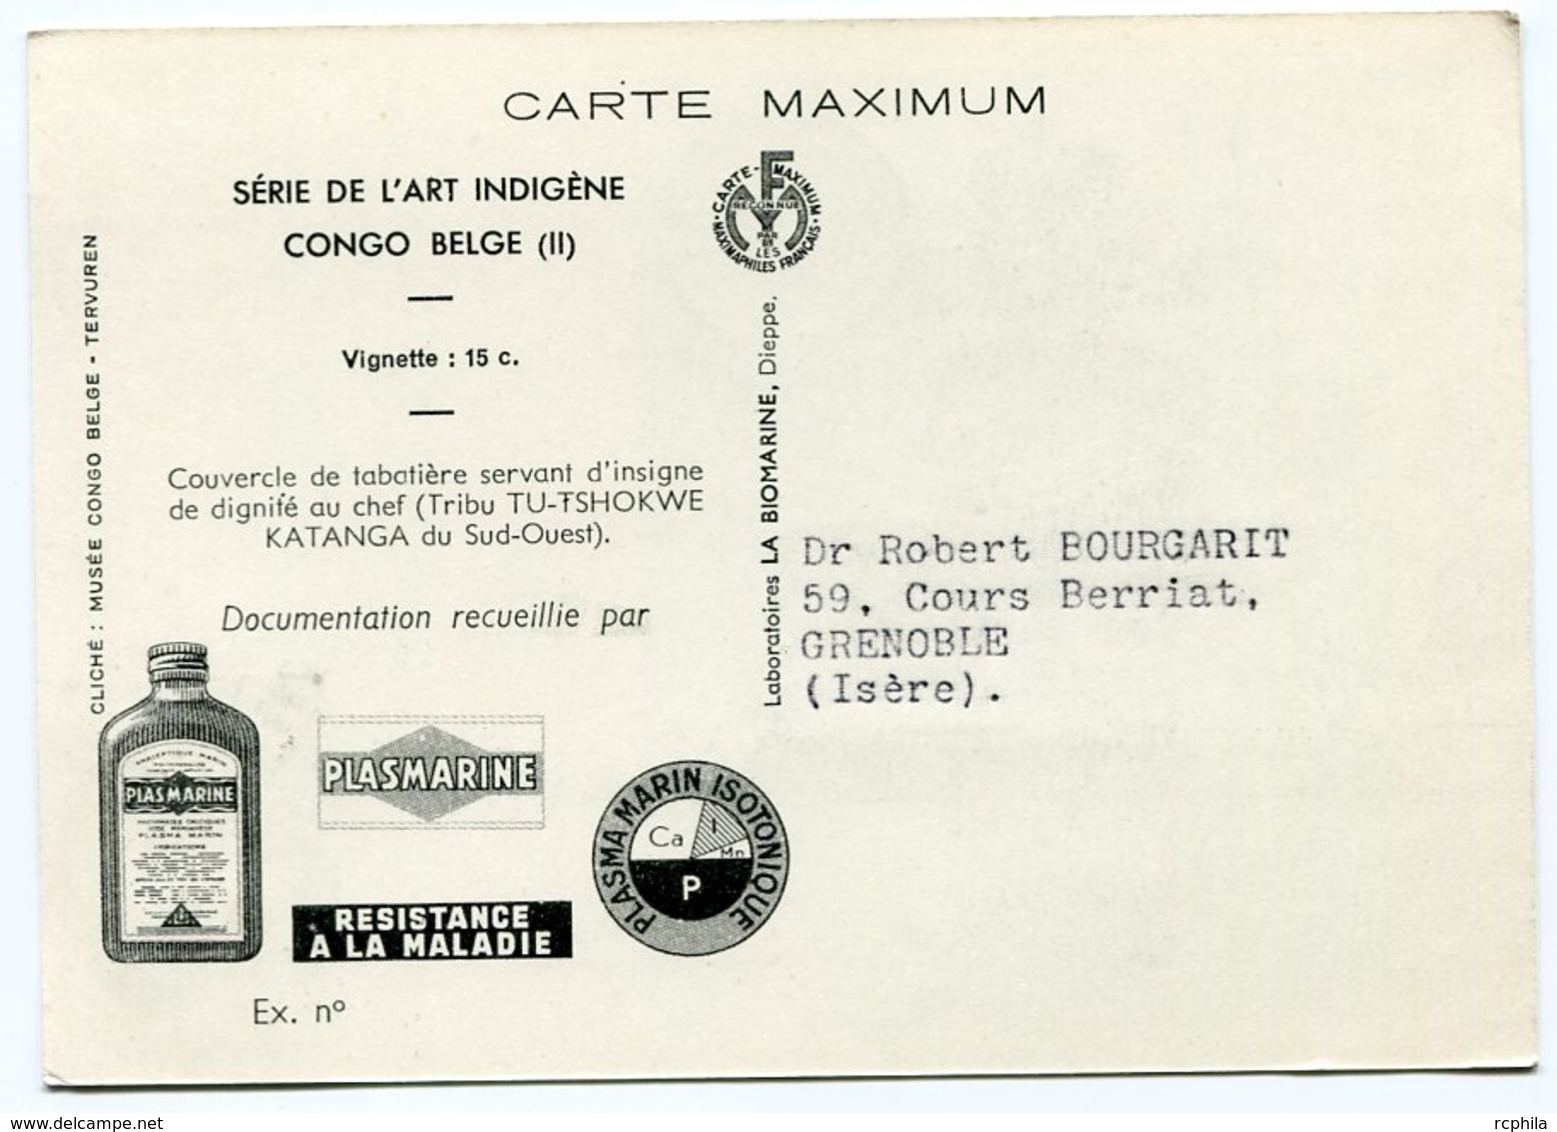 RC 12840 CONGO BELGE 1952 CARTE PLASMARINE PUBLICITÉ ADRESSÉE AUX MEDECINS - Storia Postale